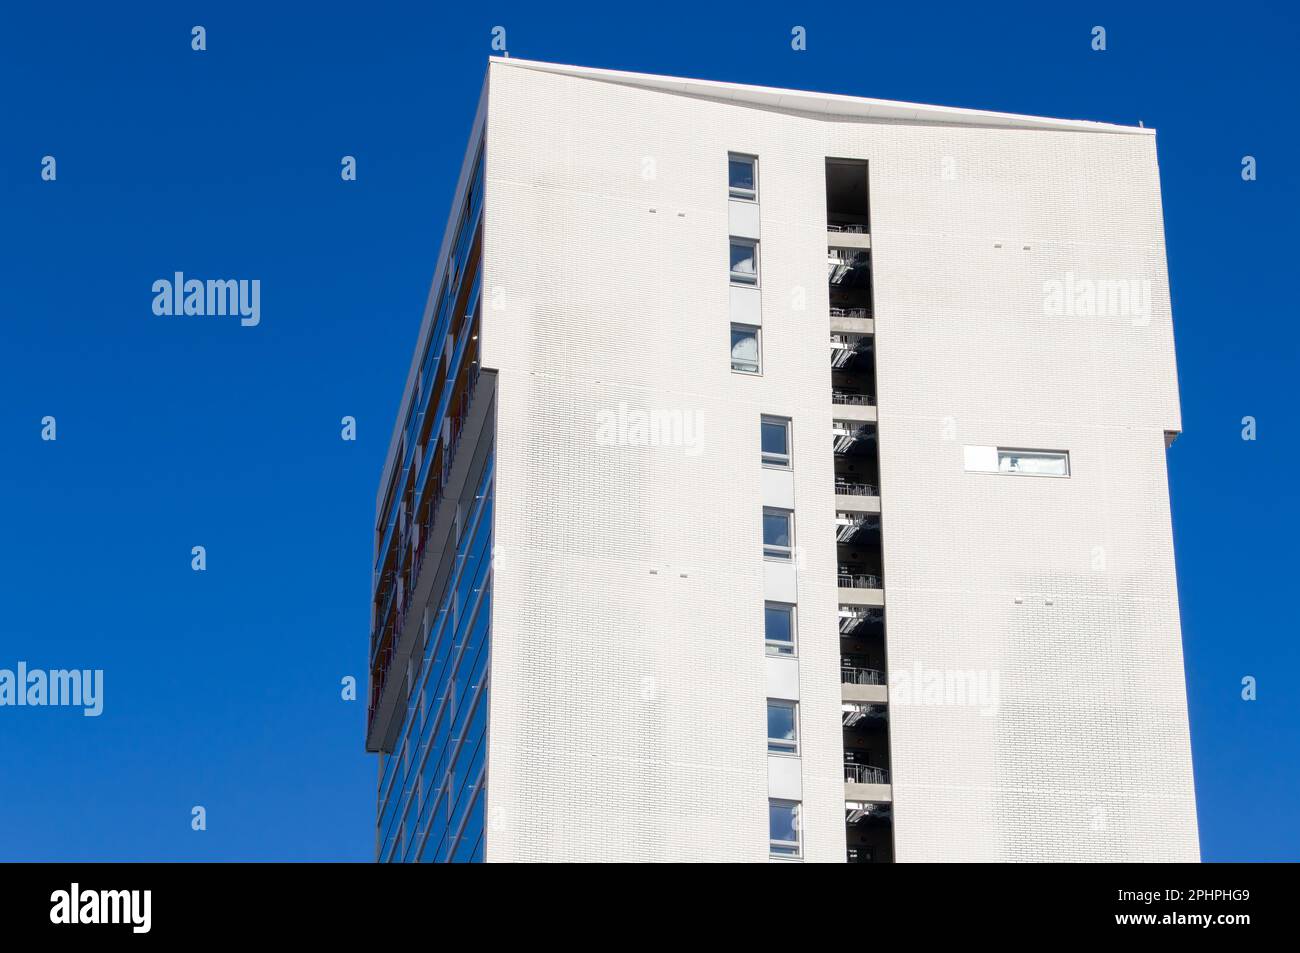 Edificio di appartamenti dall'architettura moderna. Esterno in mattoni bianchi. Edificio di stile moderno. Cielo blu chiaro sullo sfondo. Edificio unico. Foto Stock